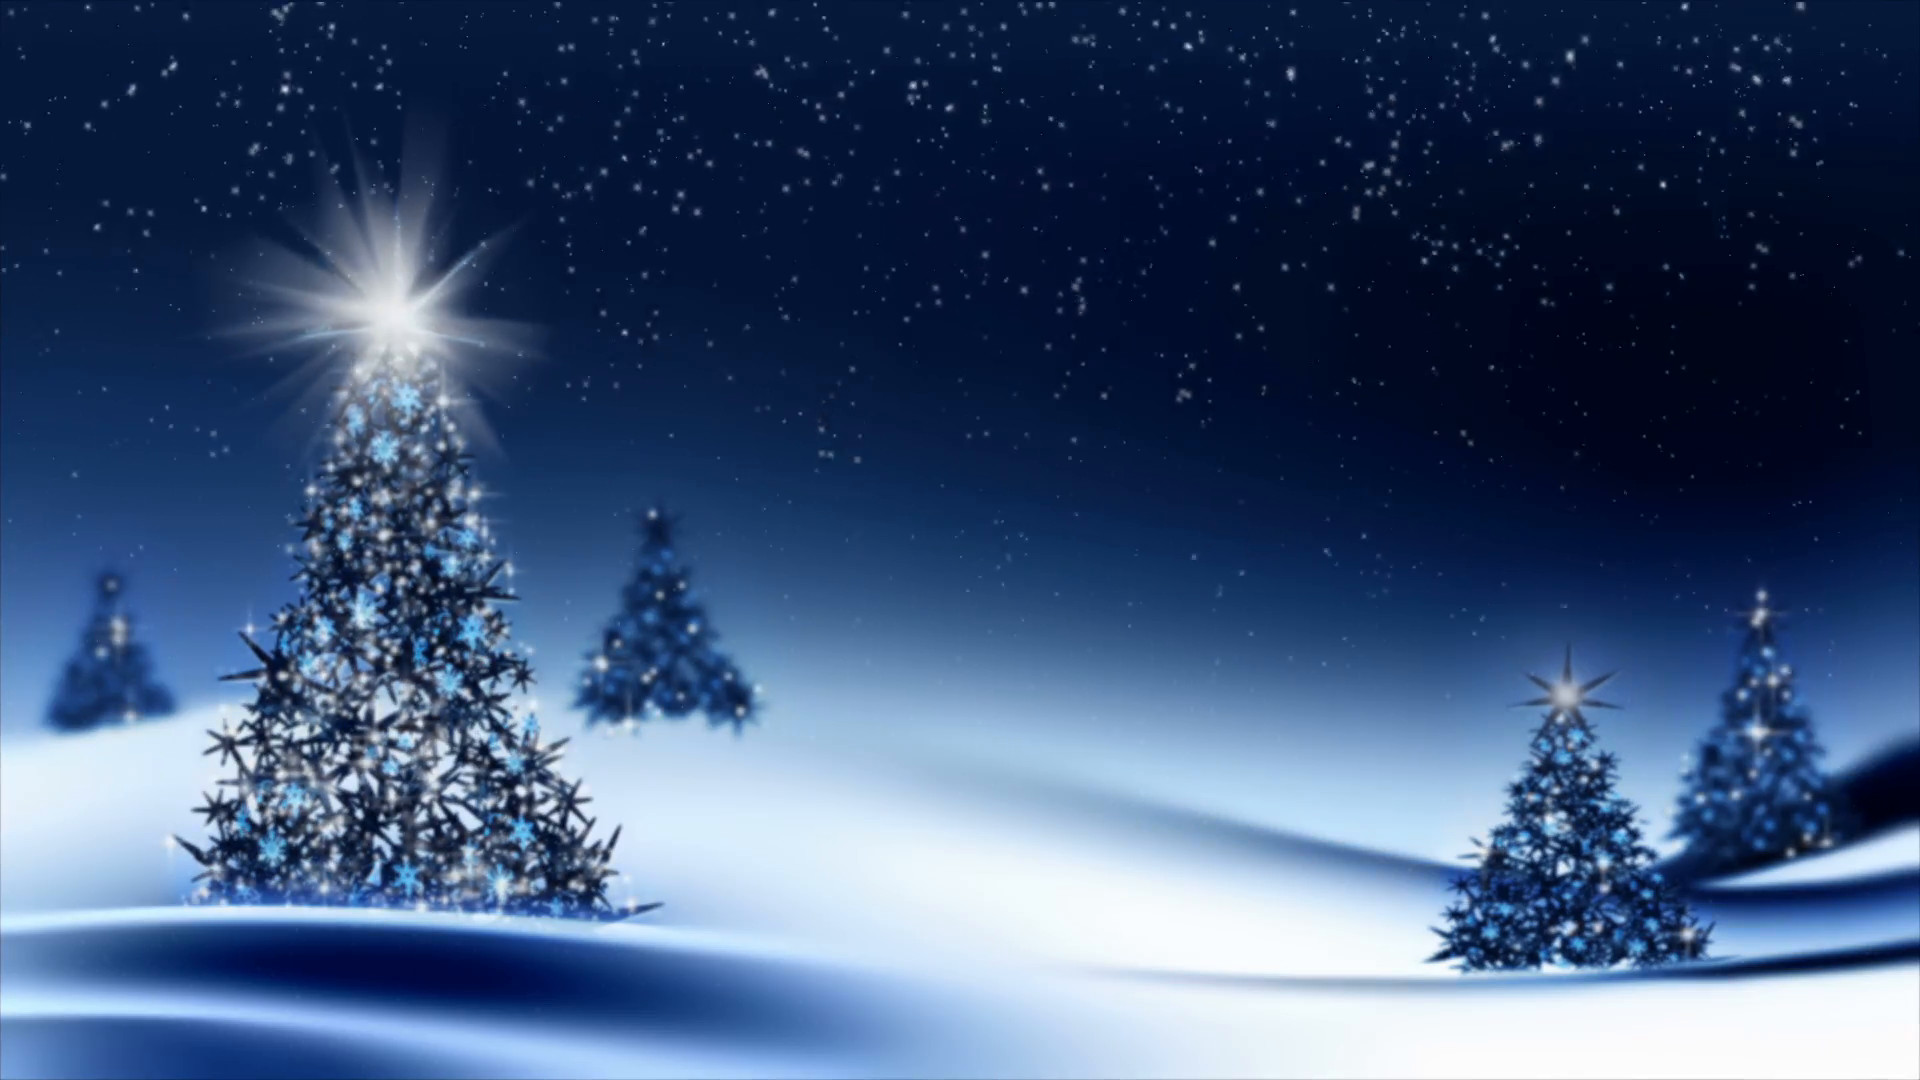 150+ mẫu Background Christmas Scene Tuyệt đẹp, miễn phí tải về